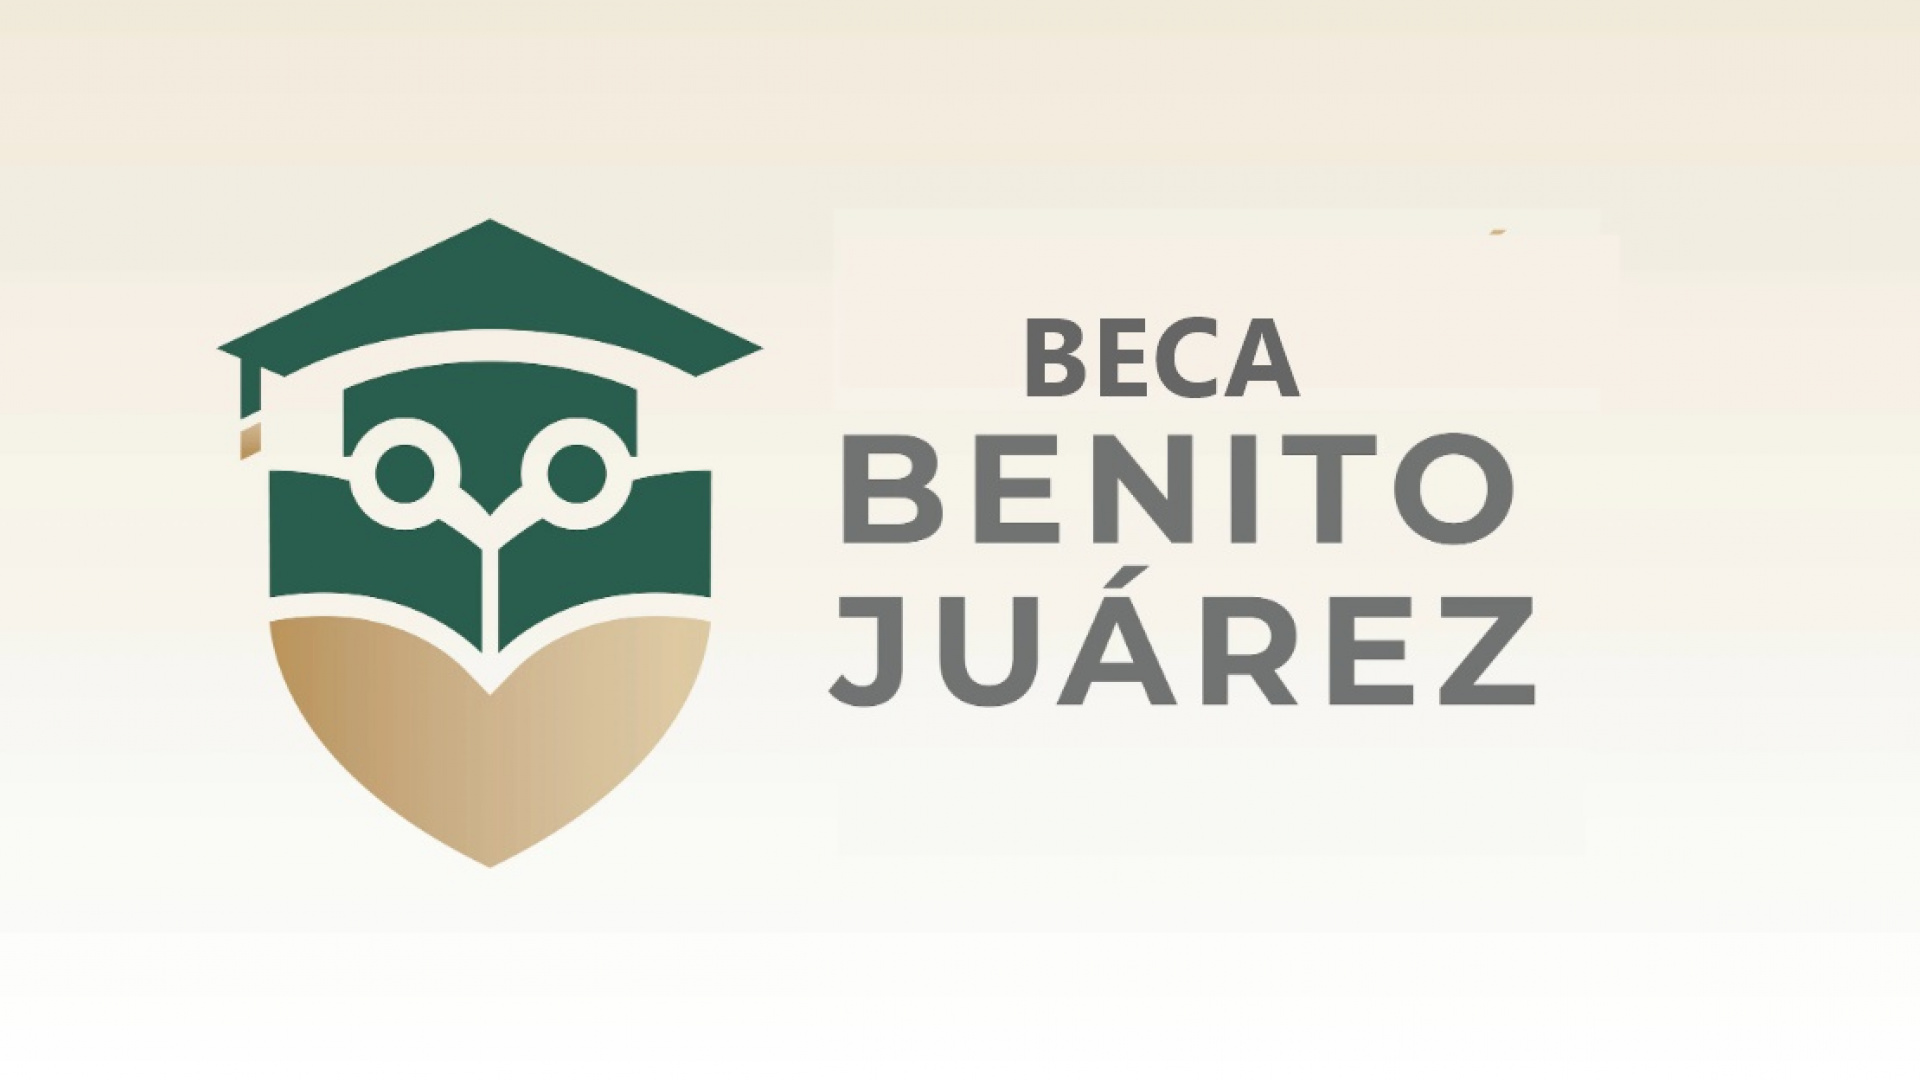 Cuál es el significado y diseño del logo de la beca Benito Juárez